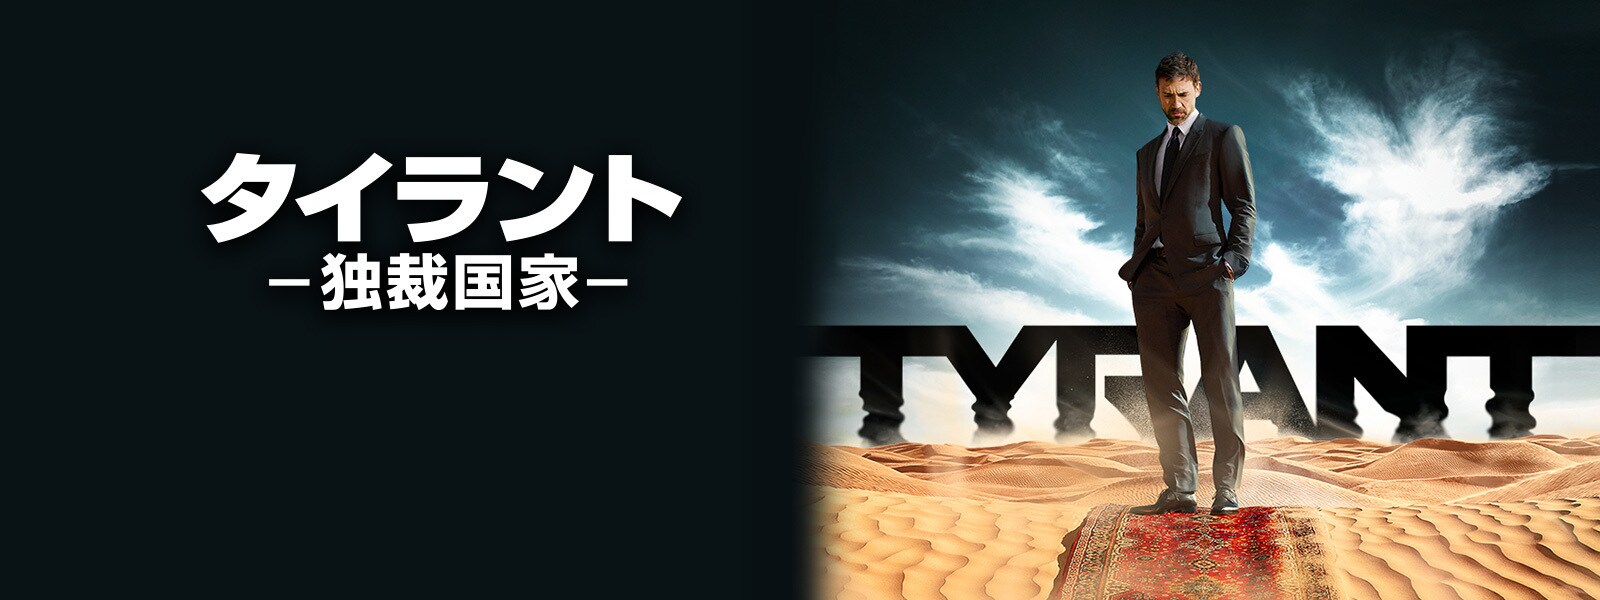 TYRANT/タイラント -独裁国家-｜Tyrant Hero Object